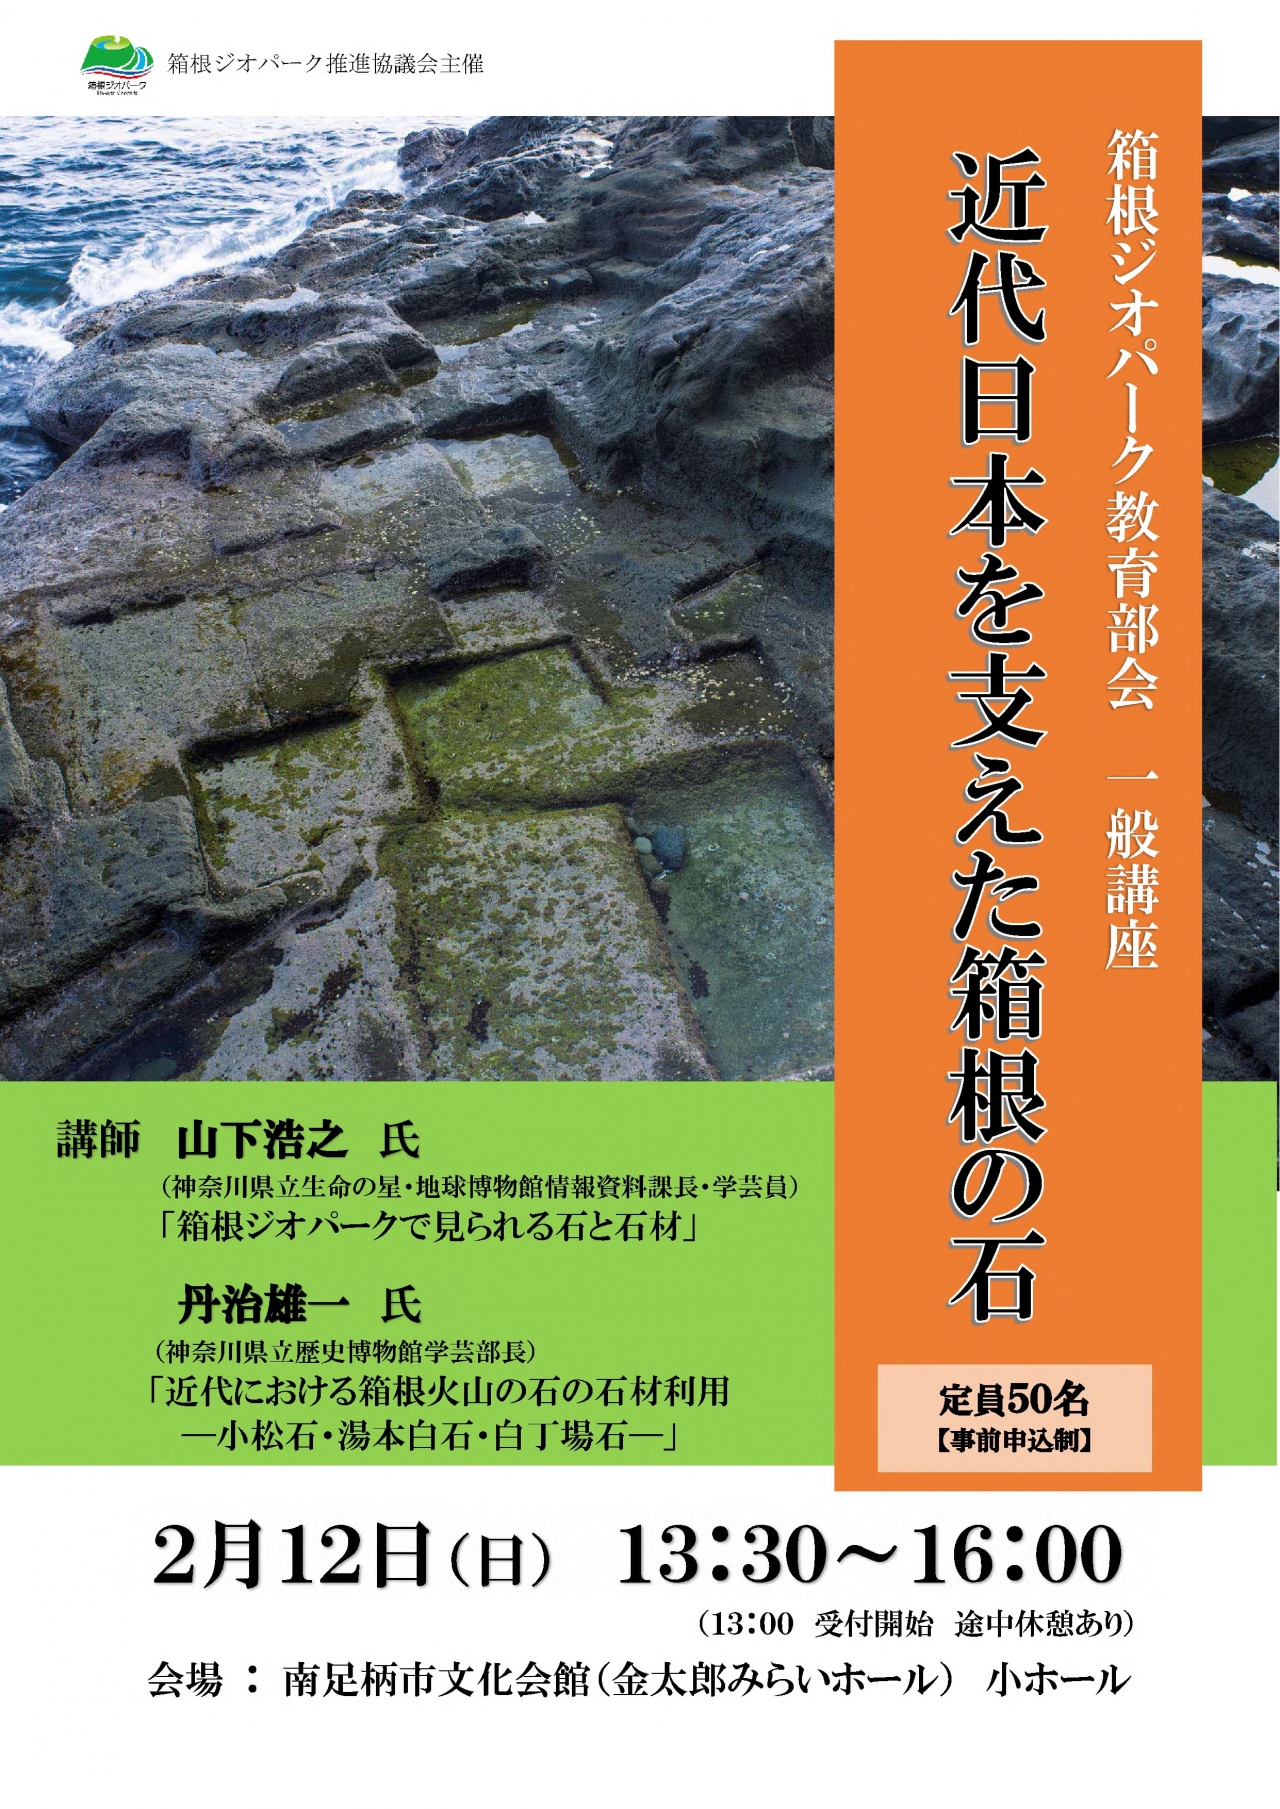 教育部会一般講座「近代日本を支えた箱根の石」